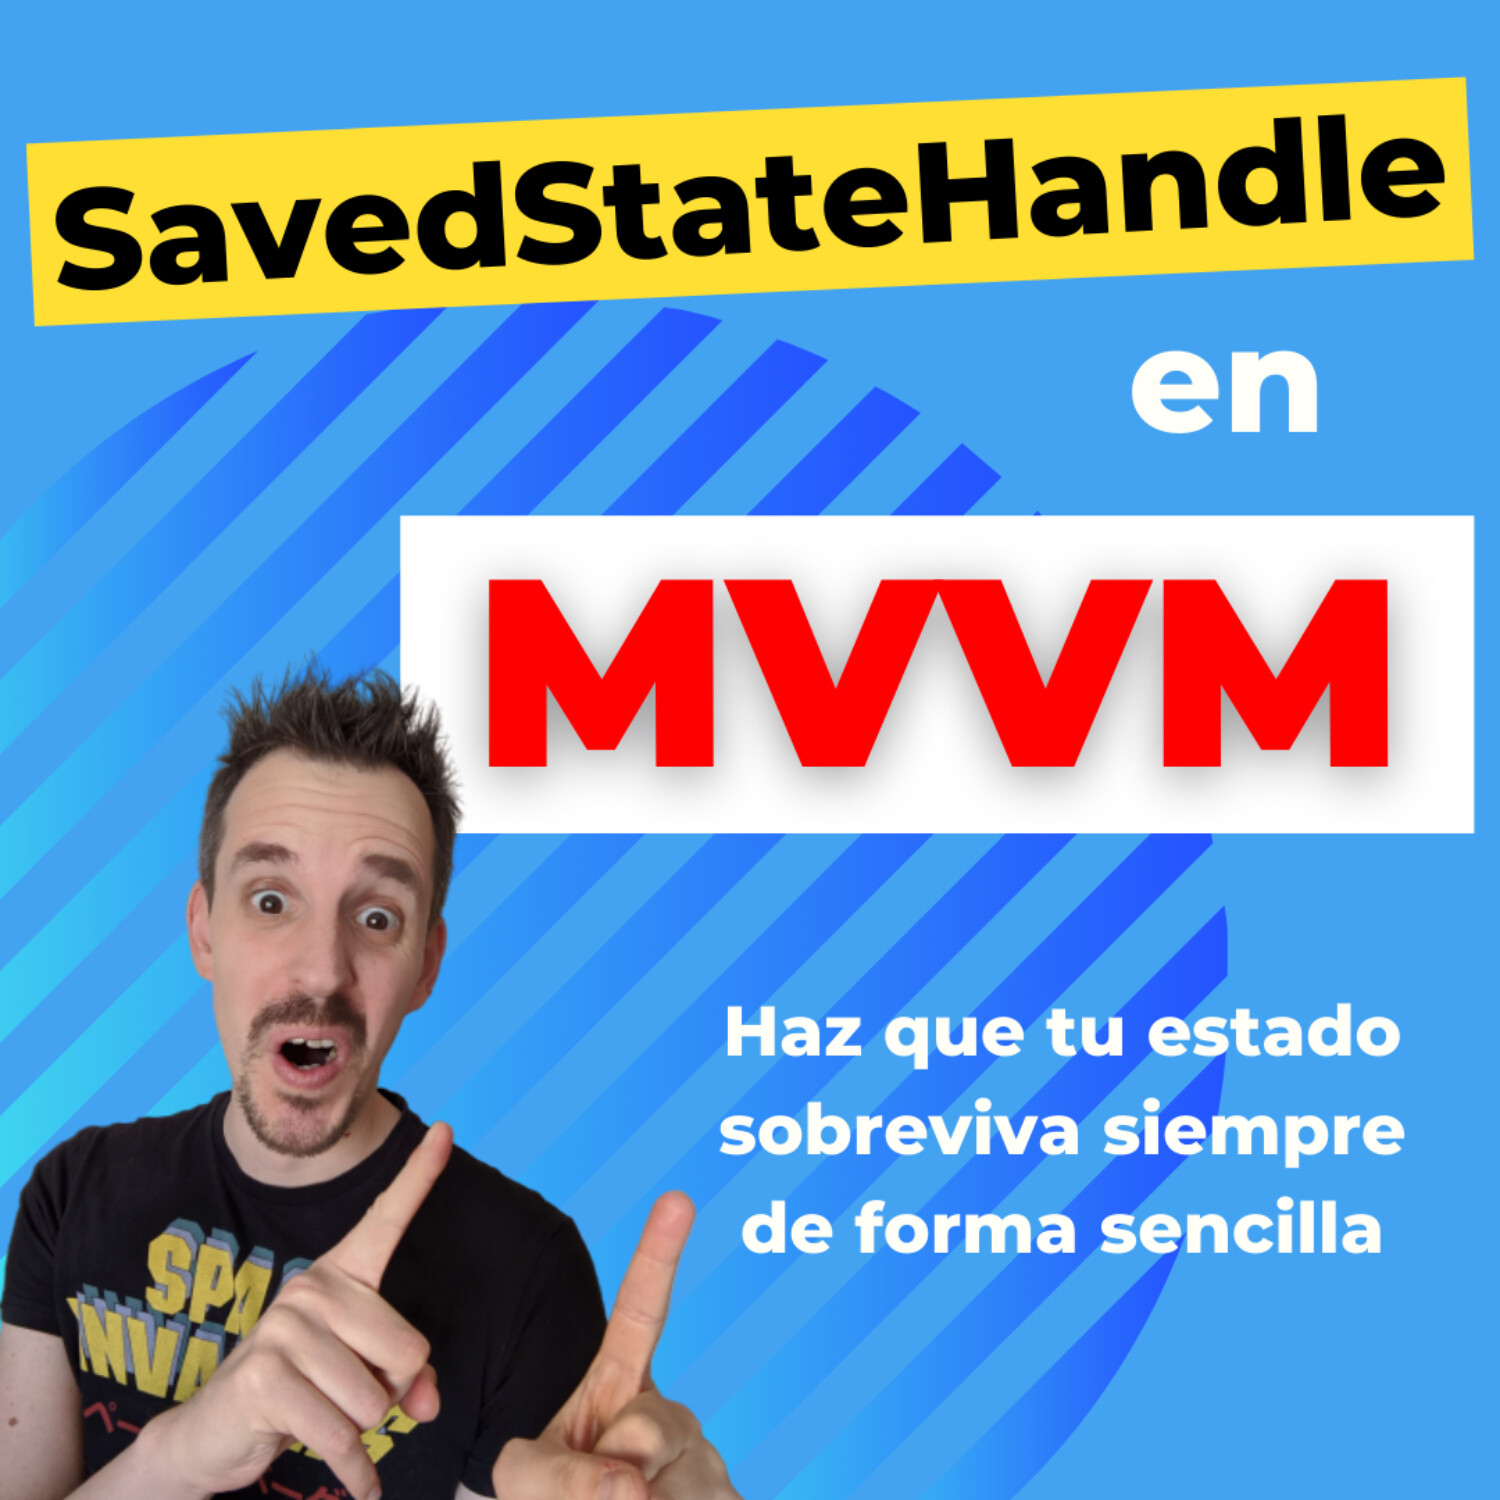 SavedStateHandle en MVVM 🔵 Haz que tu estado sobreviva siempre de forma sencilla| EP 065